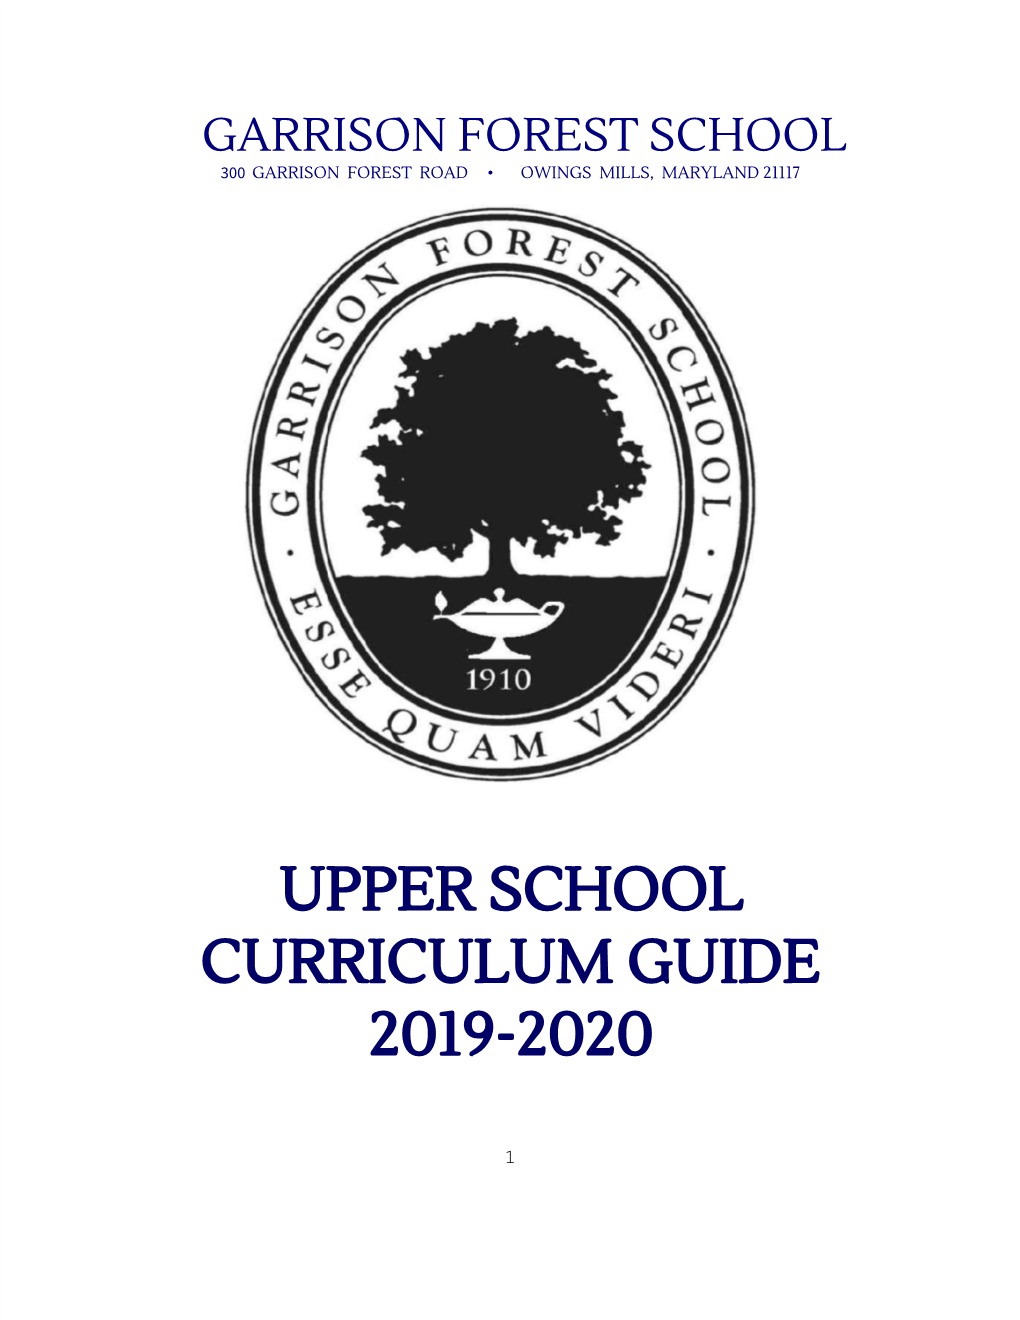 Upper School Curriculum Guide 2019-2020